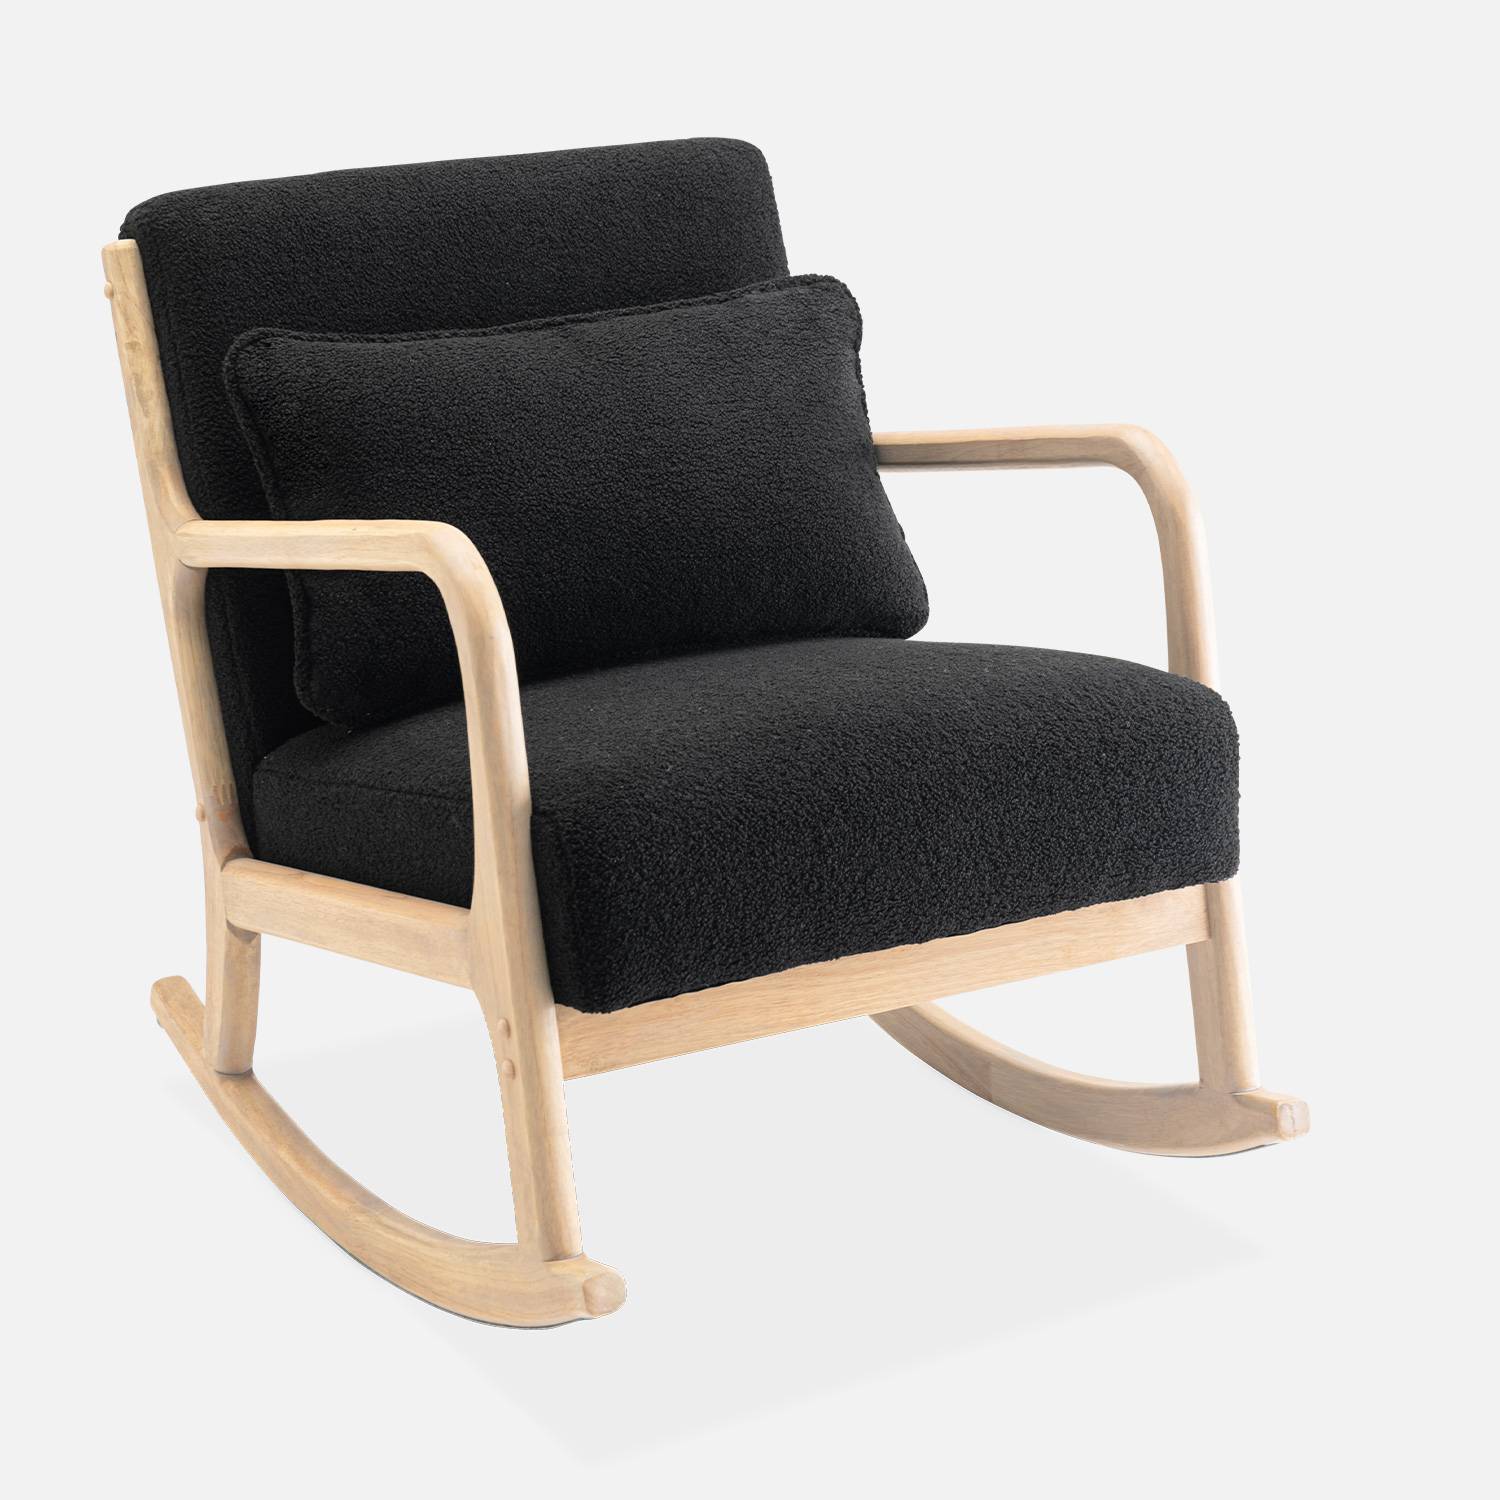 Fauteuil à bascule design en bois et tissu, bouclettes noires, 1 place, rocking chair scandinave Photo3